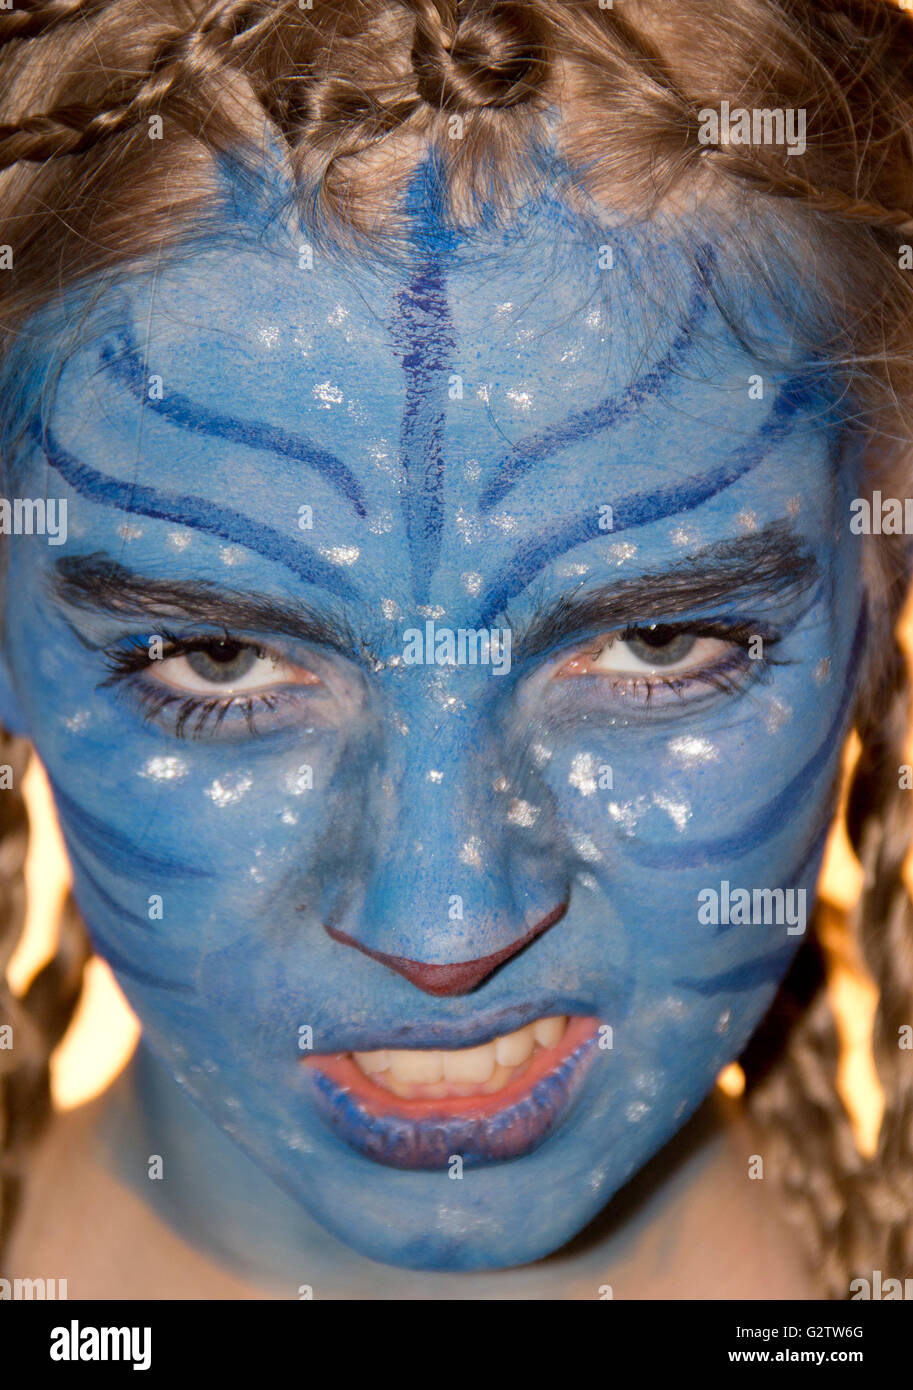 14.12.2014, Berlín, Alemania - Girl maquillaje como en la película Avatar.  0SH150923D004CAROEX.JPG - NO ESTÁ A LA VENTA EN G E R M A N S , A U S T R I  A S W I T Z E R L A N D [